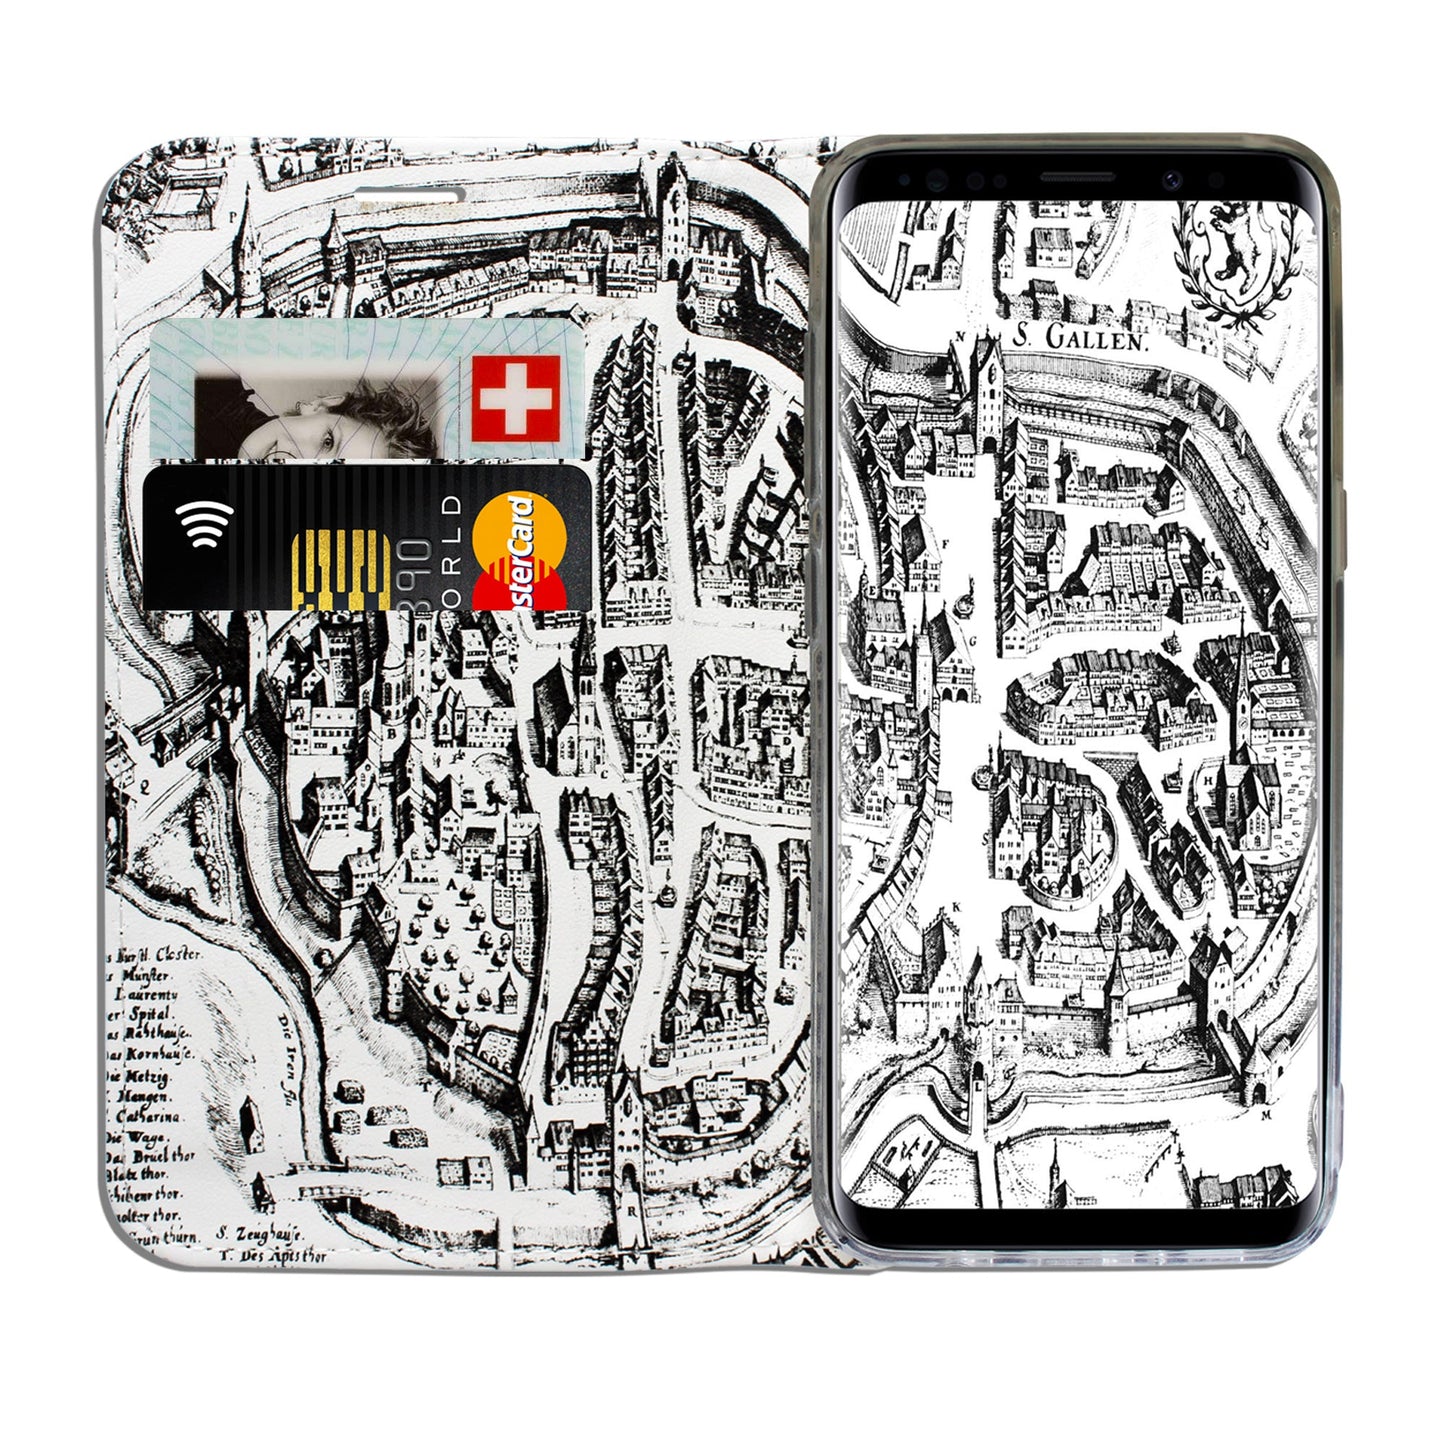 St. Gallen Merian Panorama Case für Samsung Galaxy S8